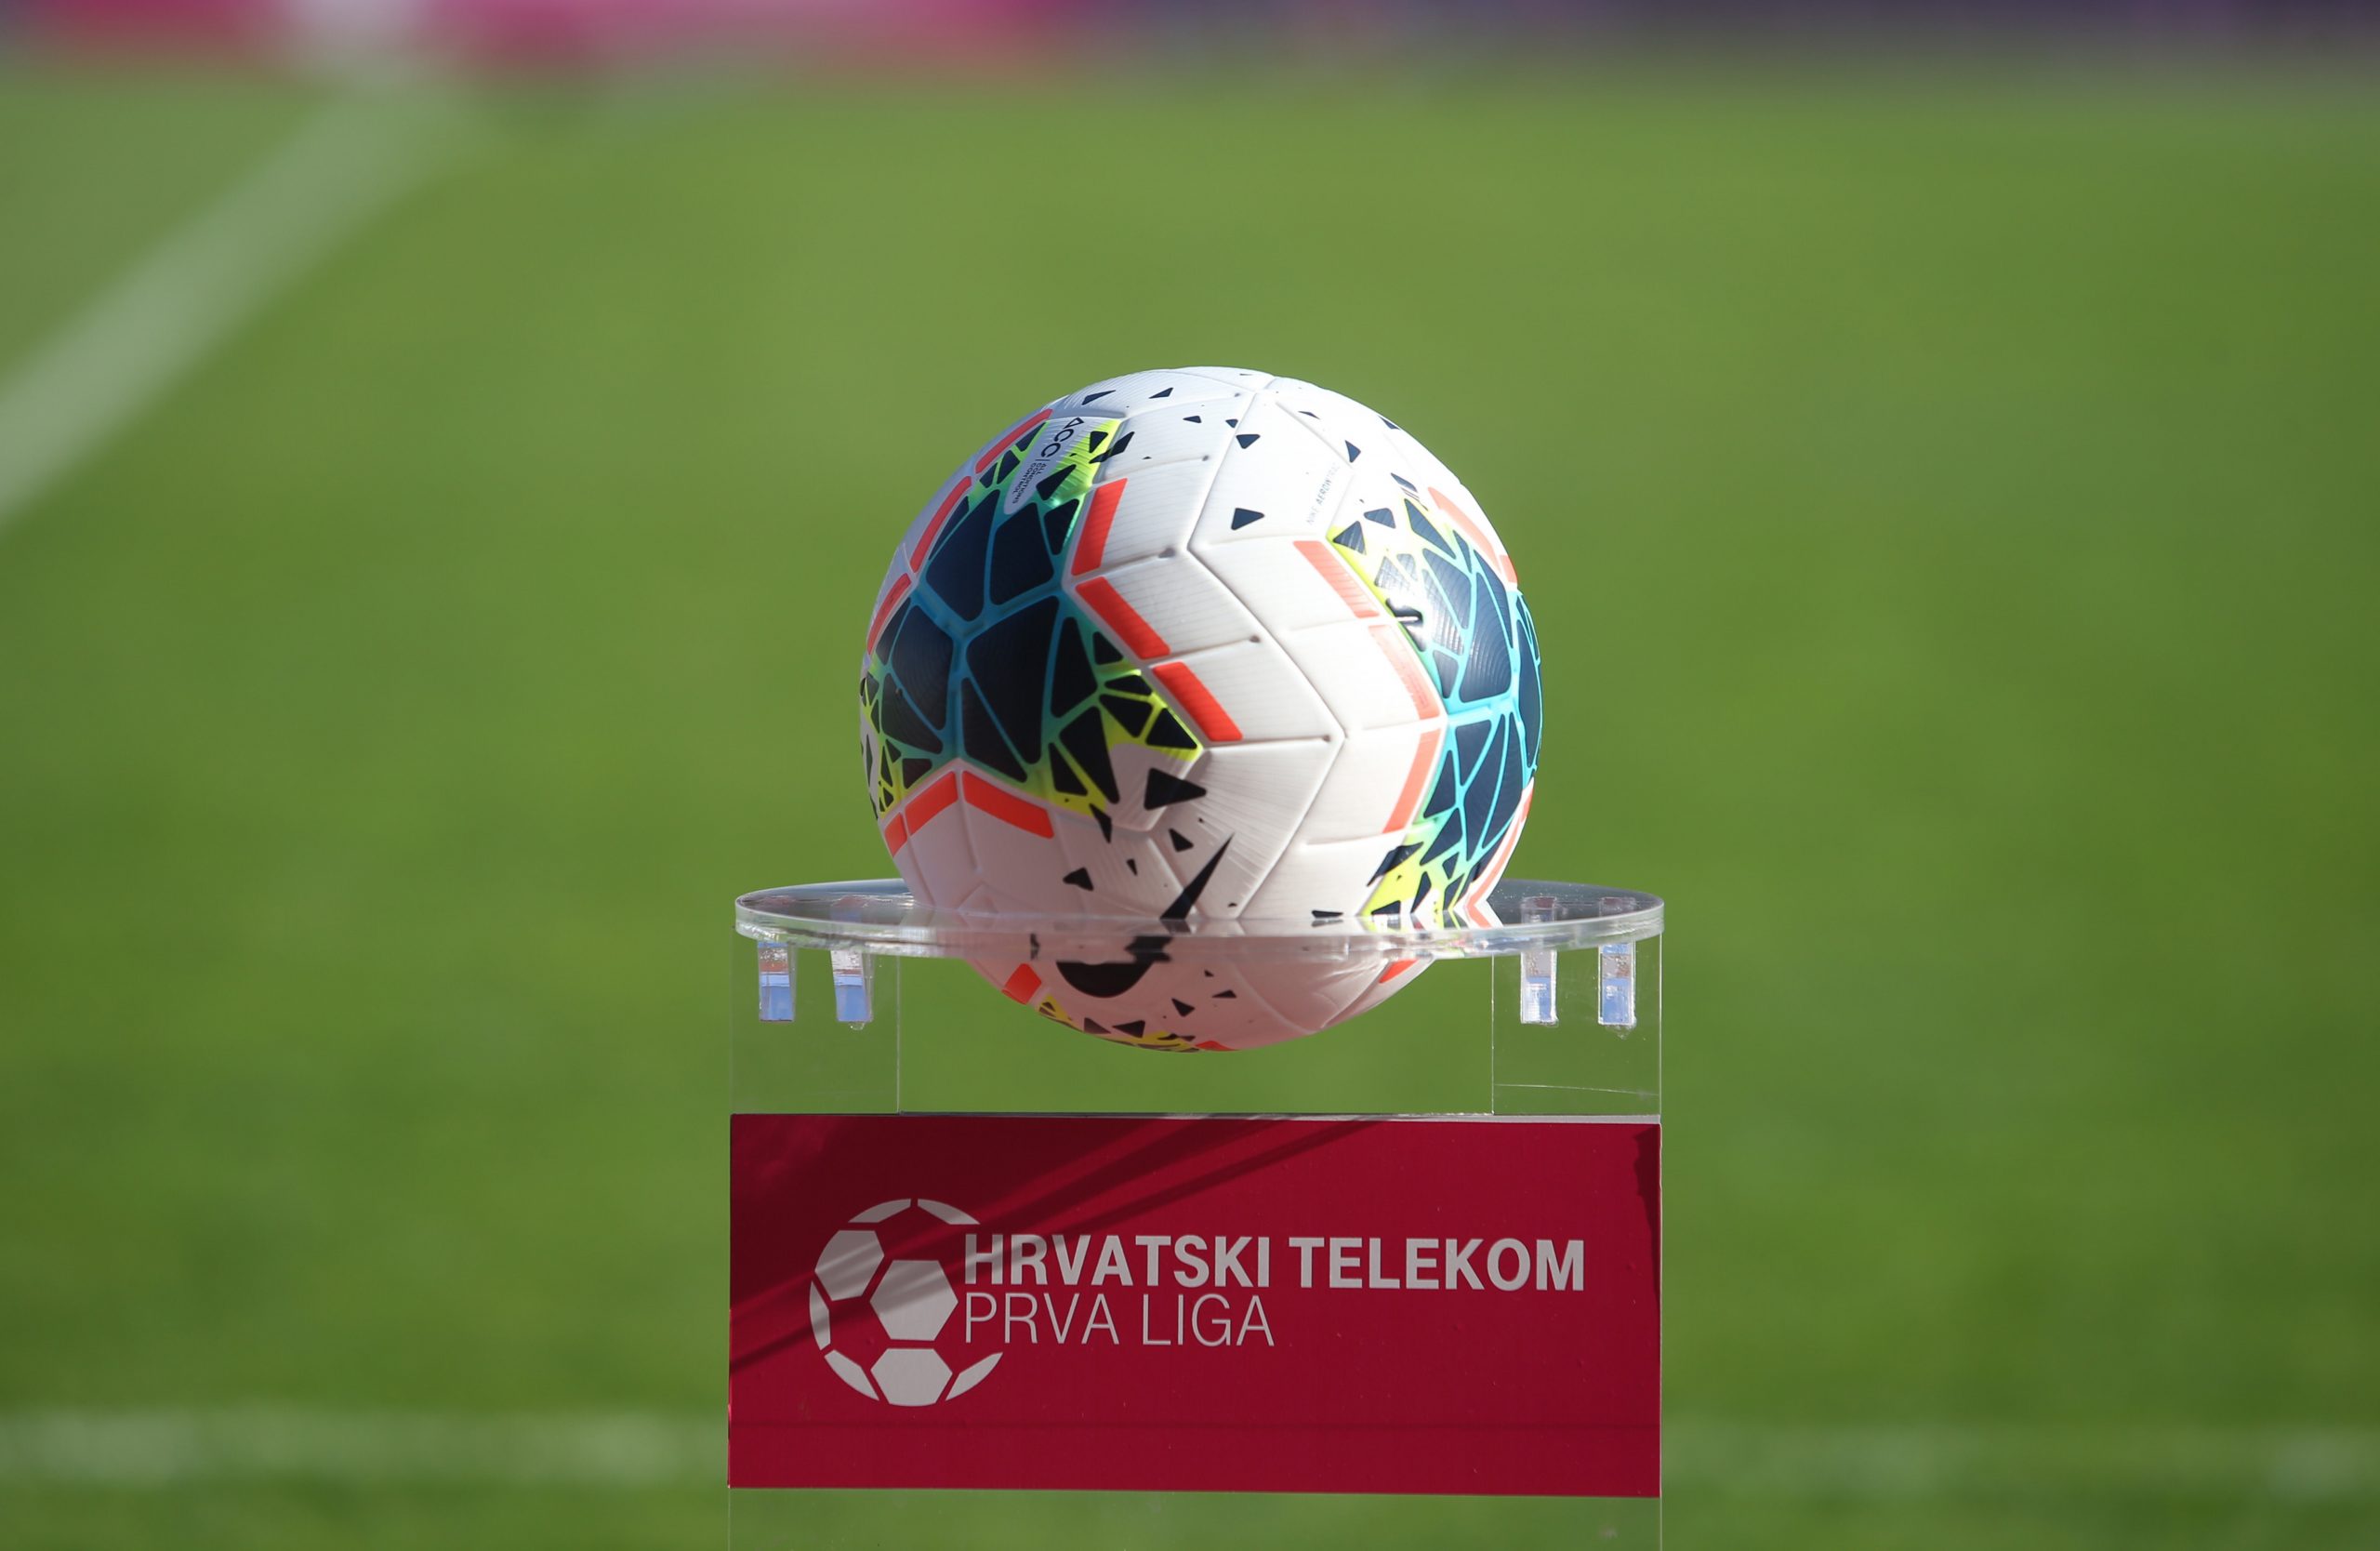 26.10.2019., Split - Hrvatski Telekom Prva liga, 13. kolo, HNK Hajduk - NK Slaven Belupo.  
Photo: Ivo Cagalj/PIXSELL